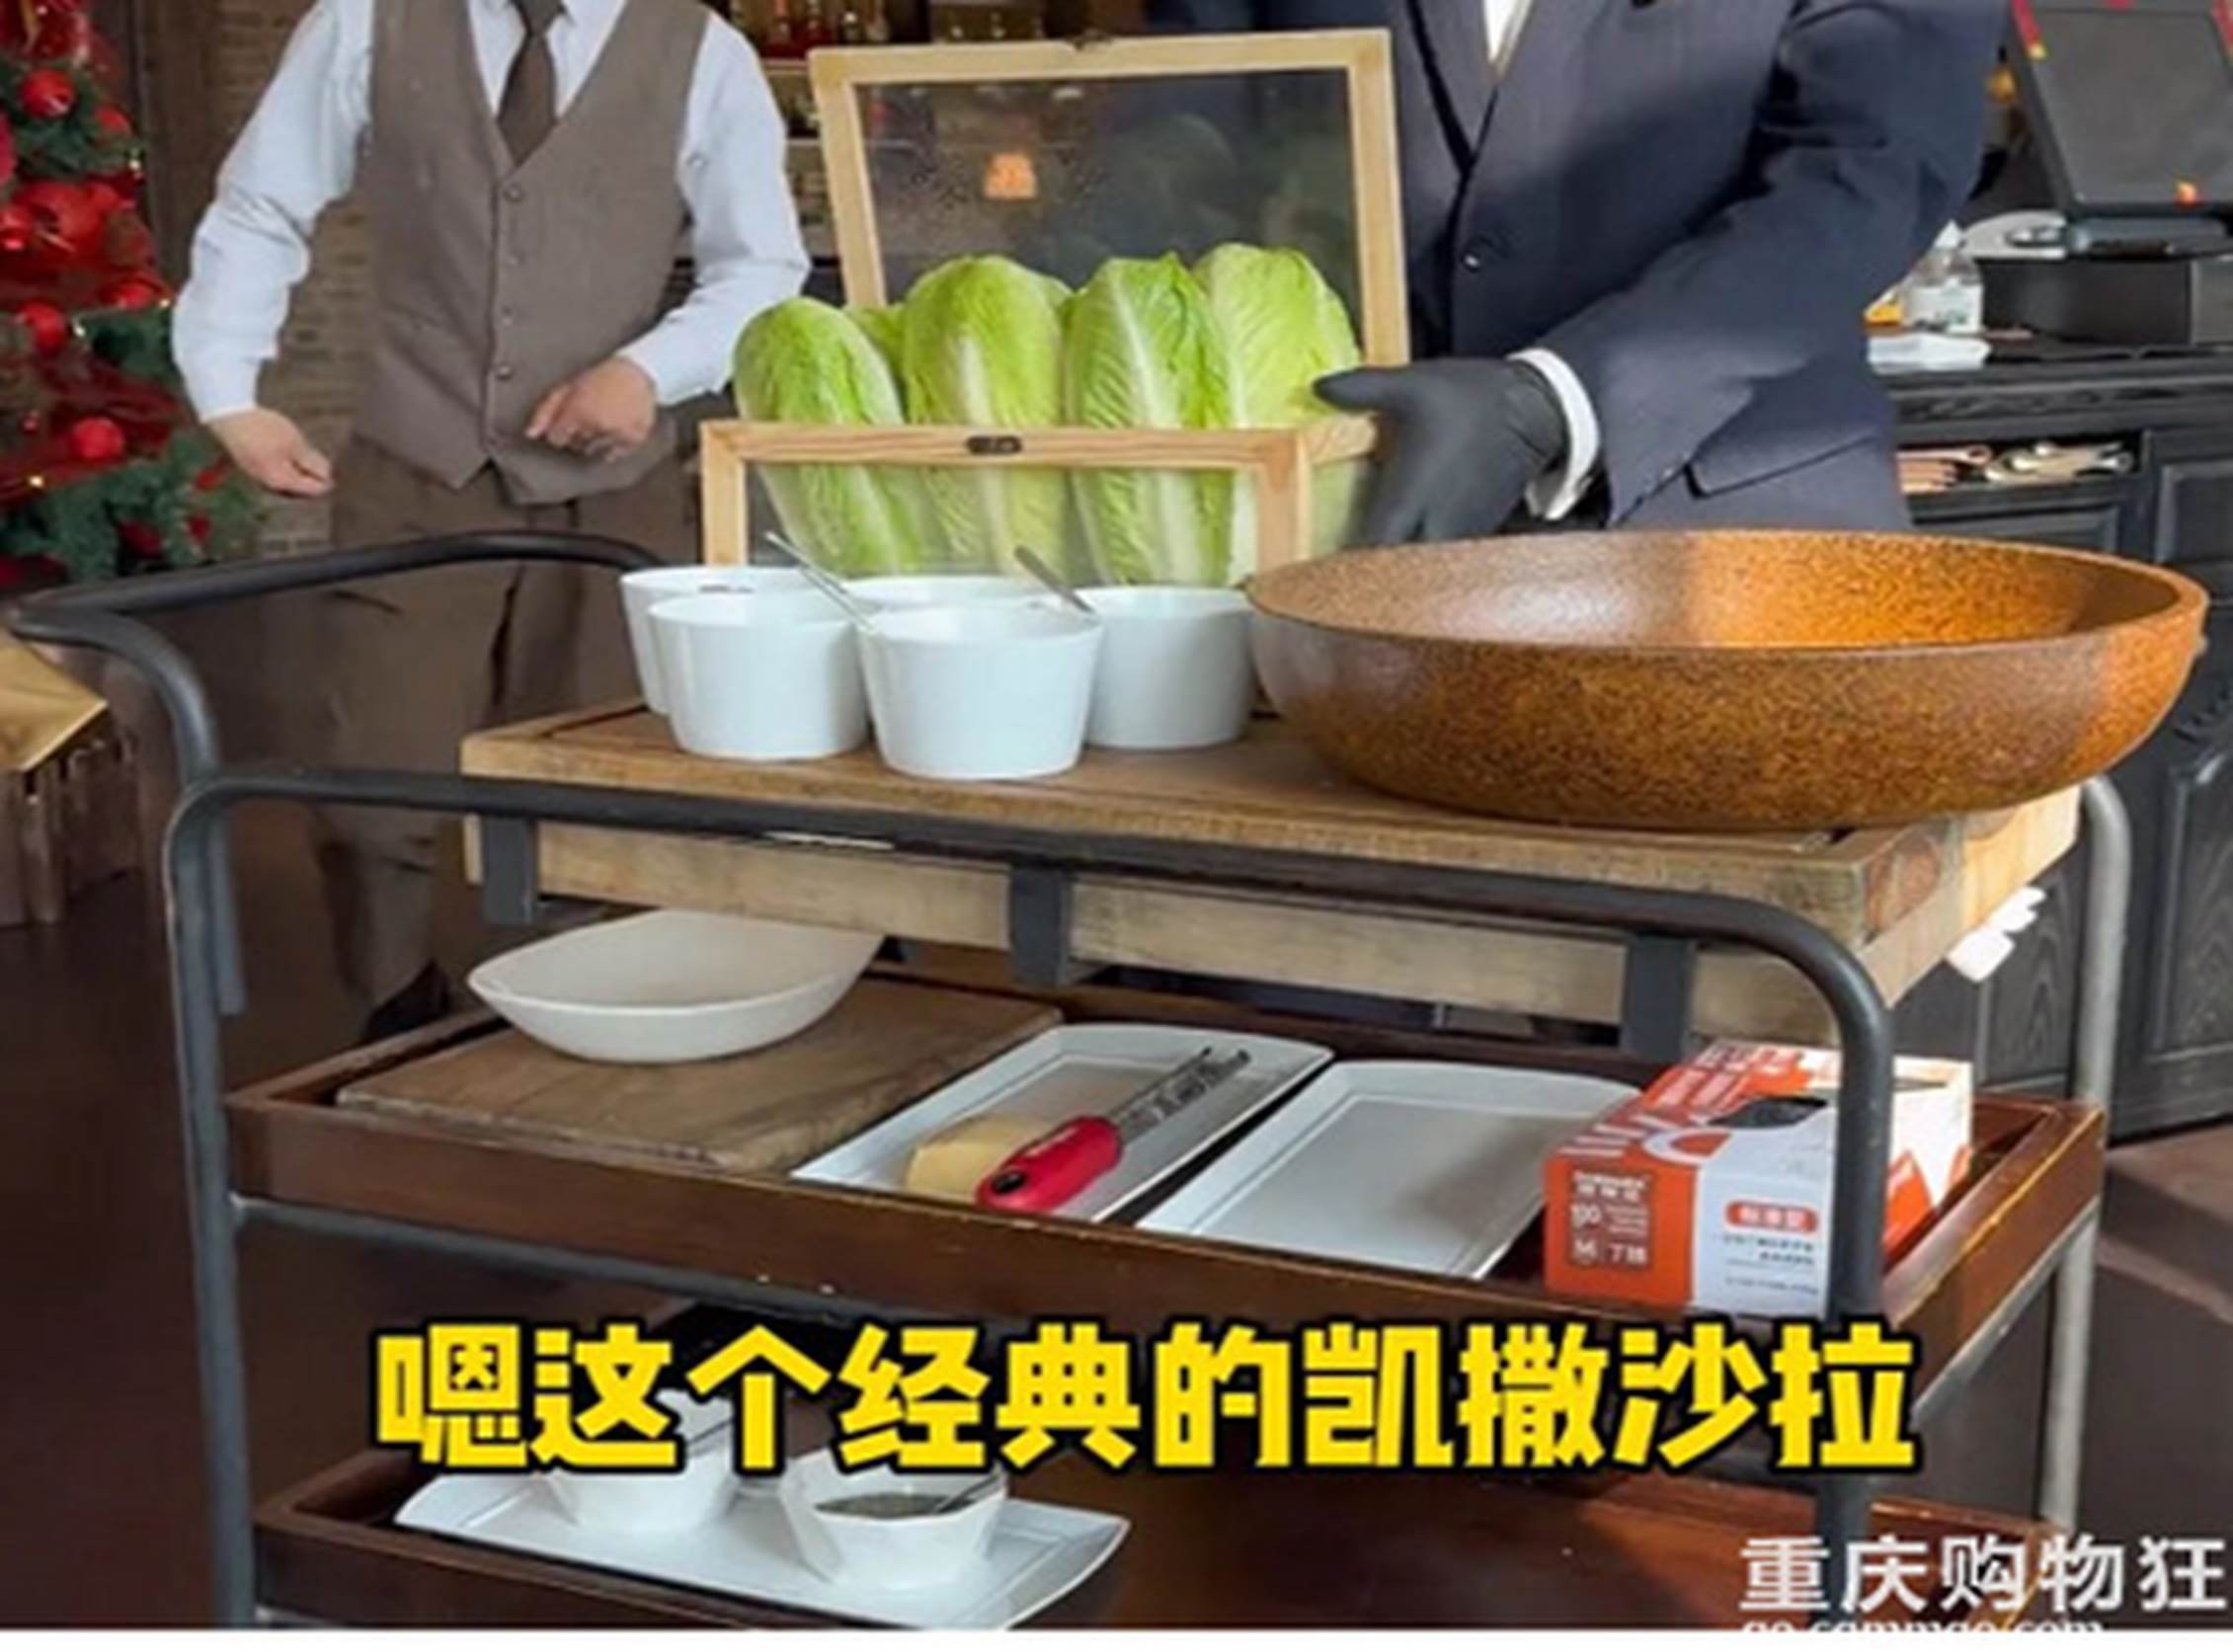 Cơm nhà giàu Thượng Hải gây tranh cãi với giá như trên trời: Có gì trong món salad hơn 700.000 đồng và đĩa bánh sừng bò bé như ngón tay?-1